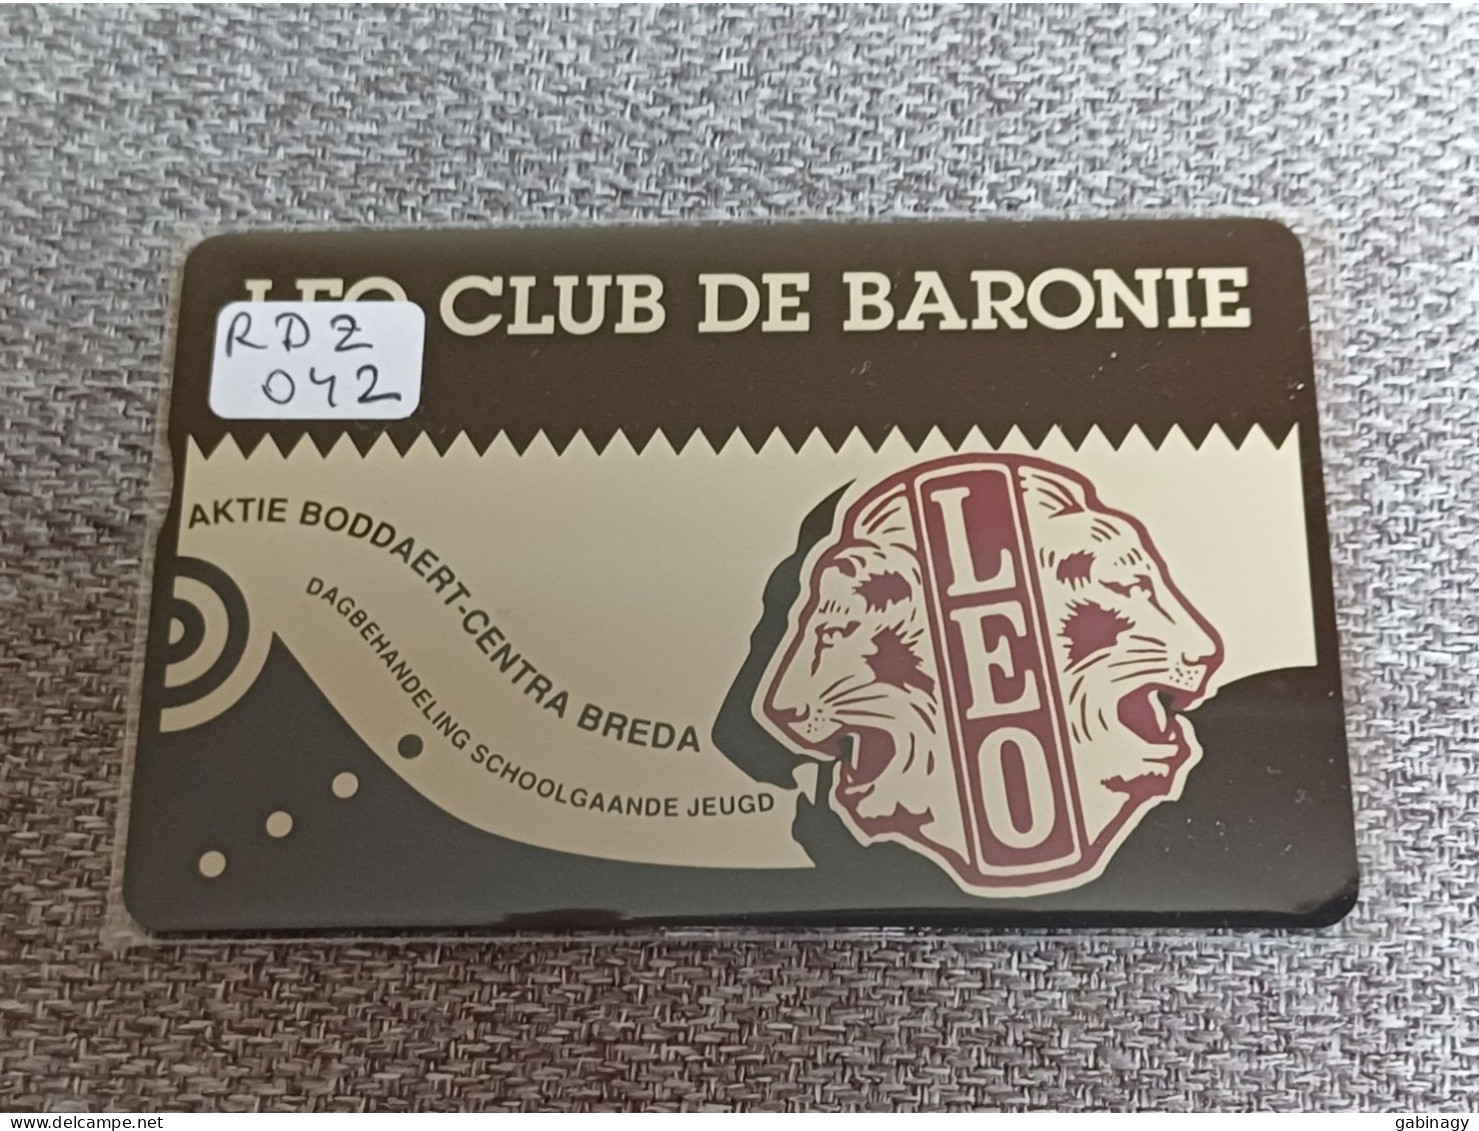 NETHERLANDS - RDZ042 - Leo Club De Baronie - 1.000 EX. - Privadas